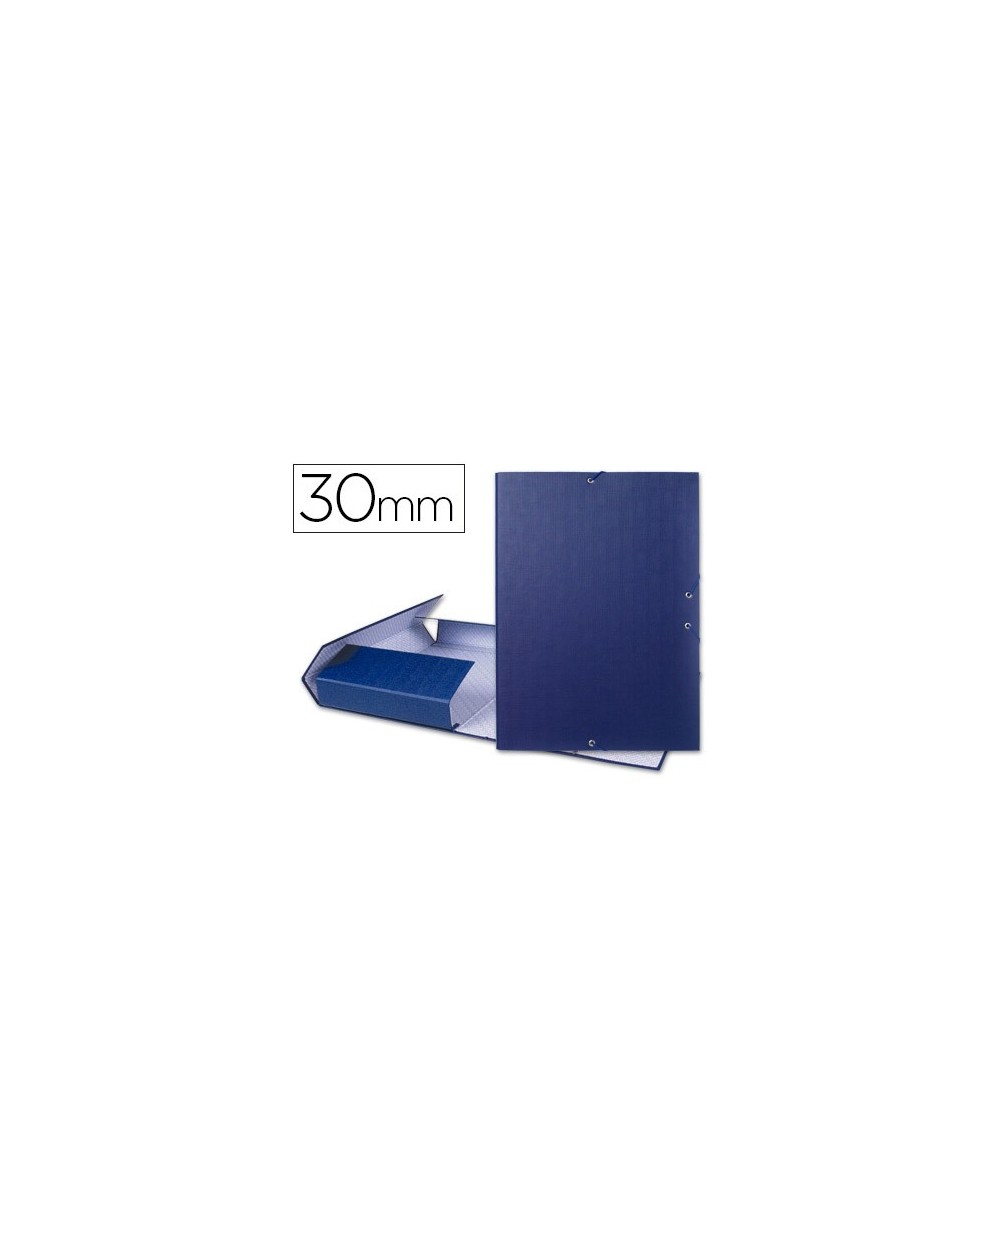 Carpeta proyectos liderpapel folio lomo 30mm carton forrado azul